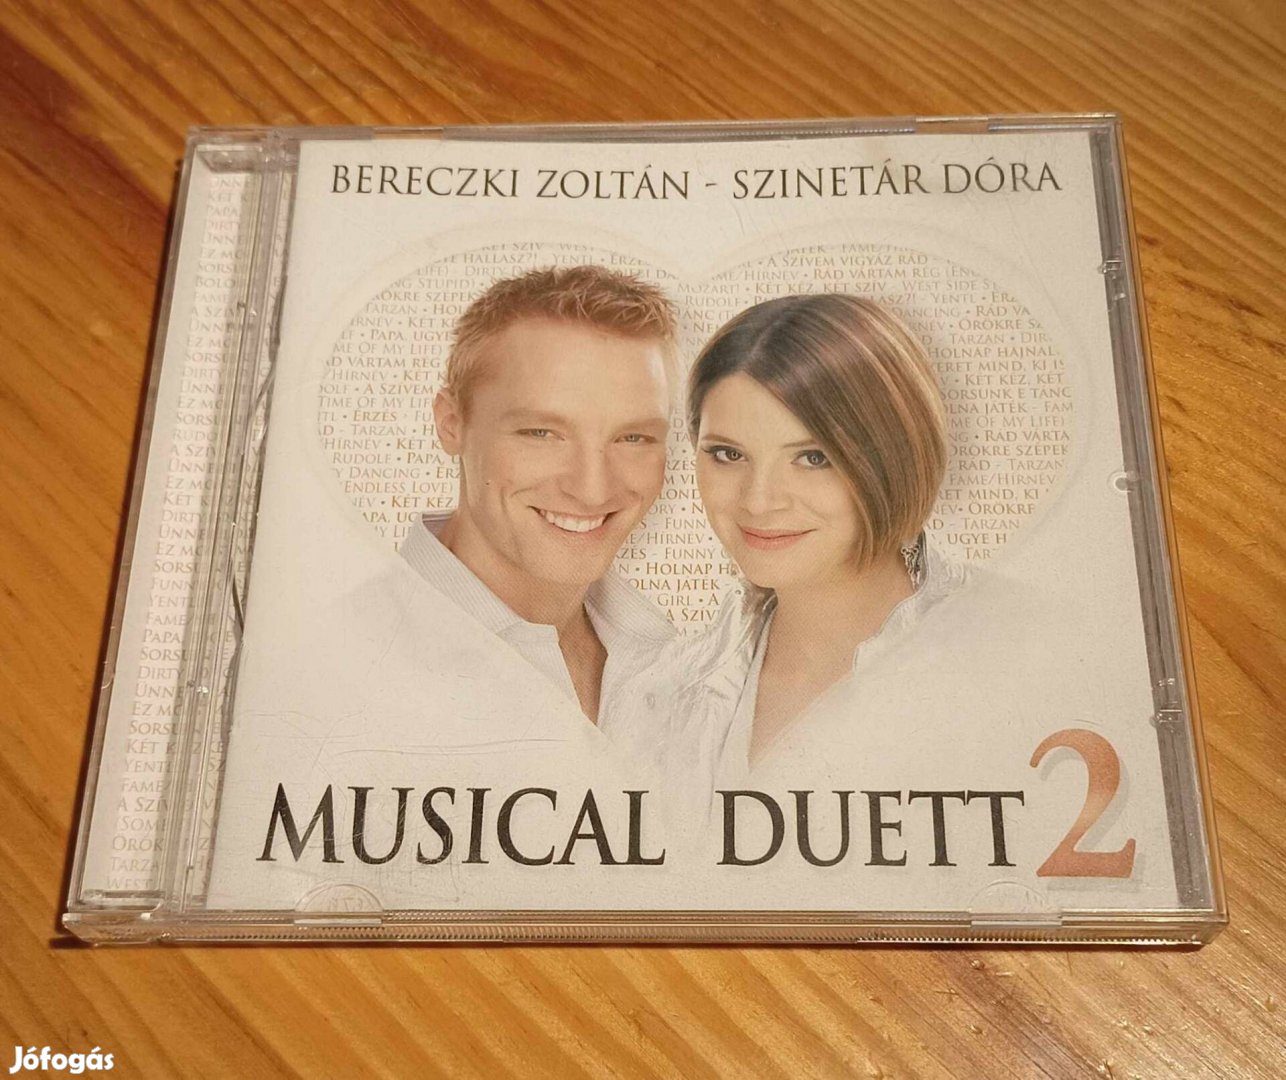 Musical Duett 2. CD - Bereczki Zoltán - Szinetár Dóra 